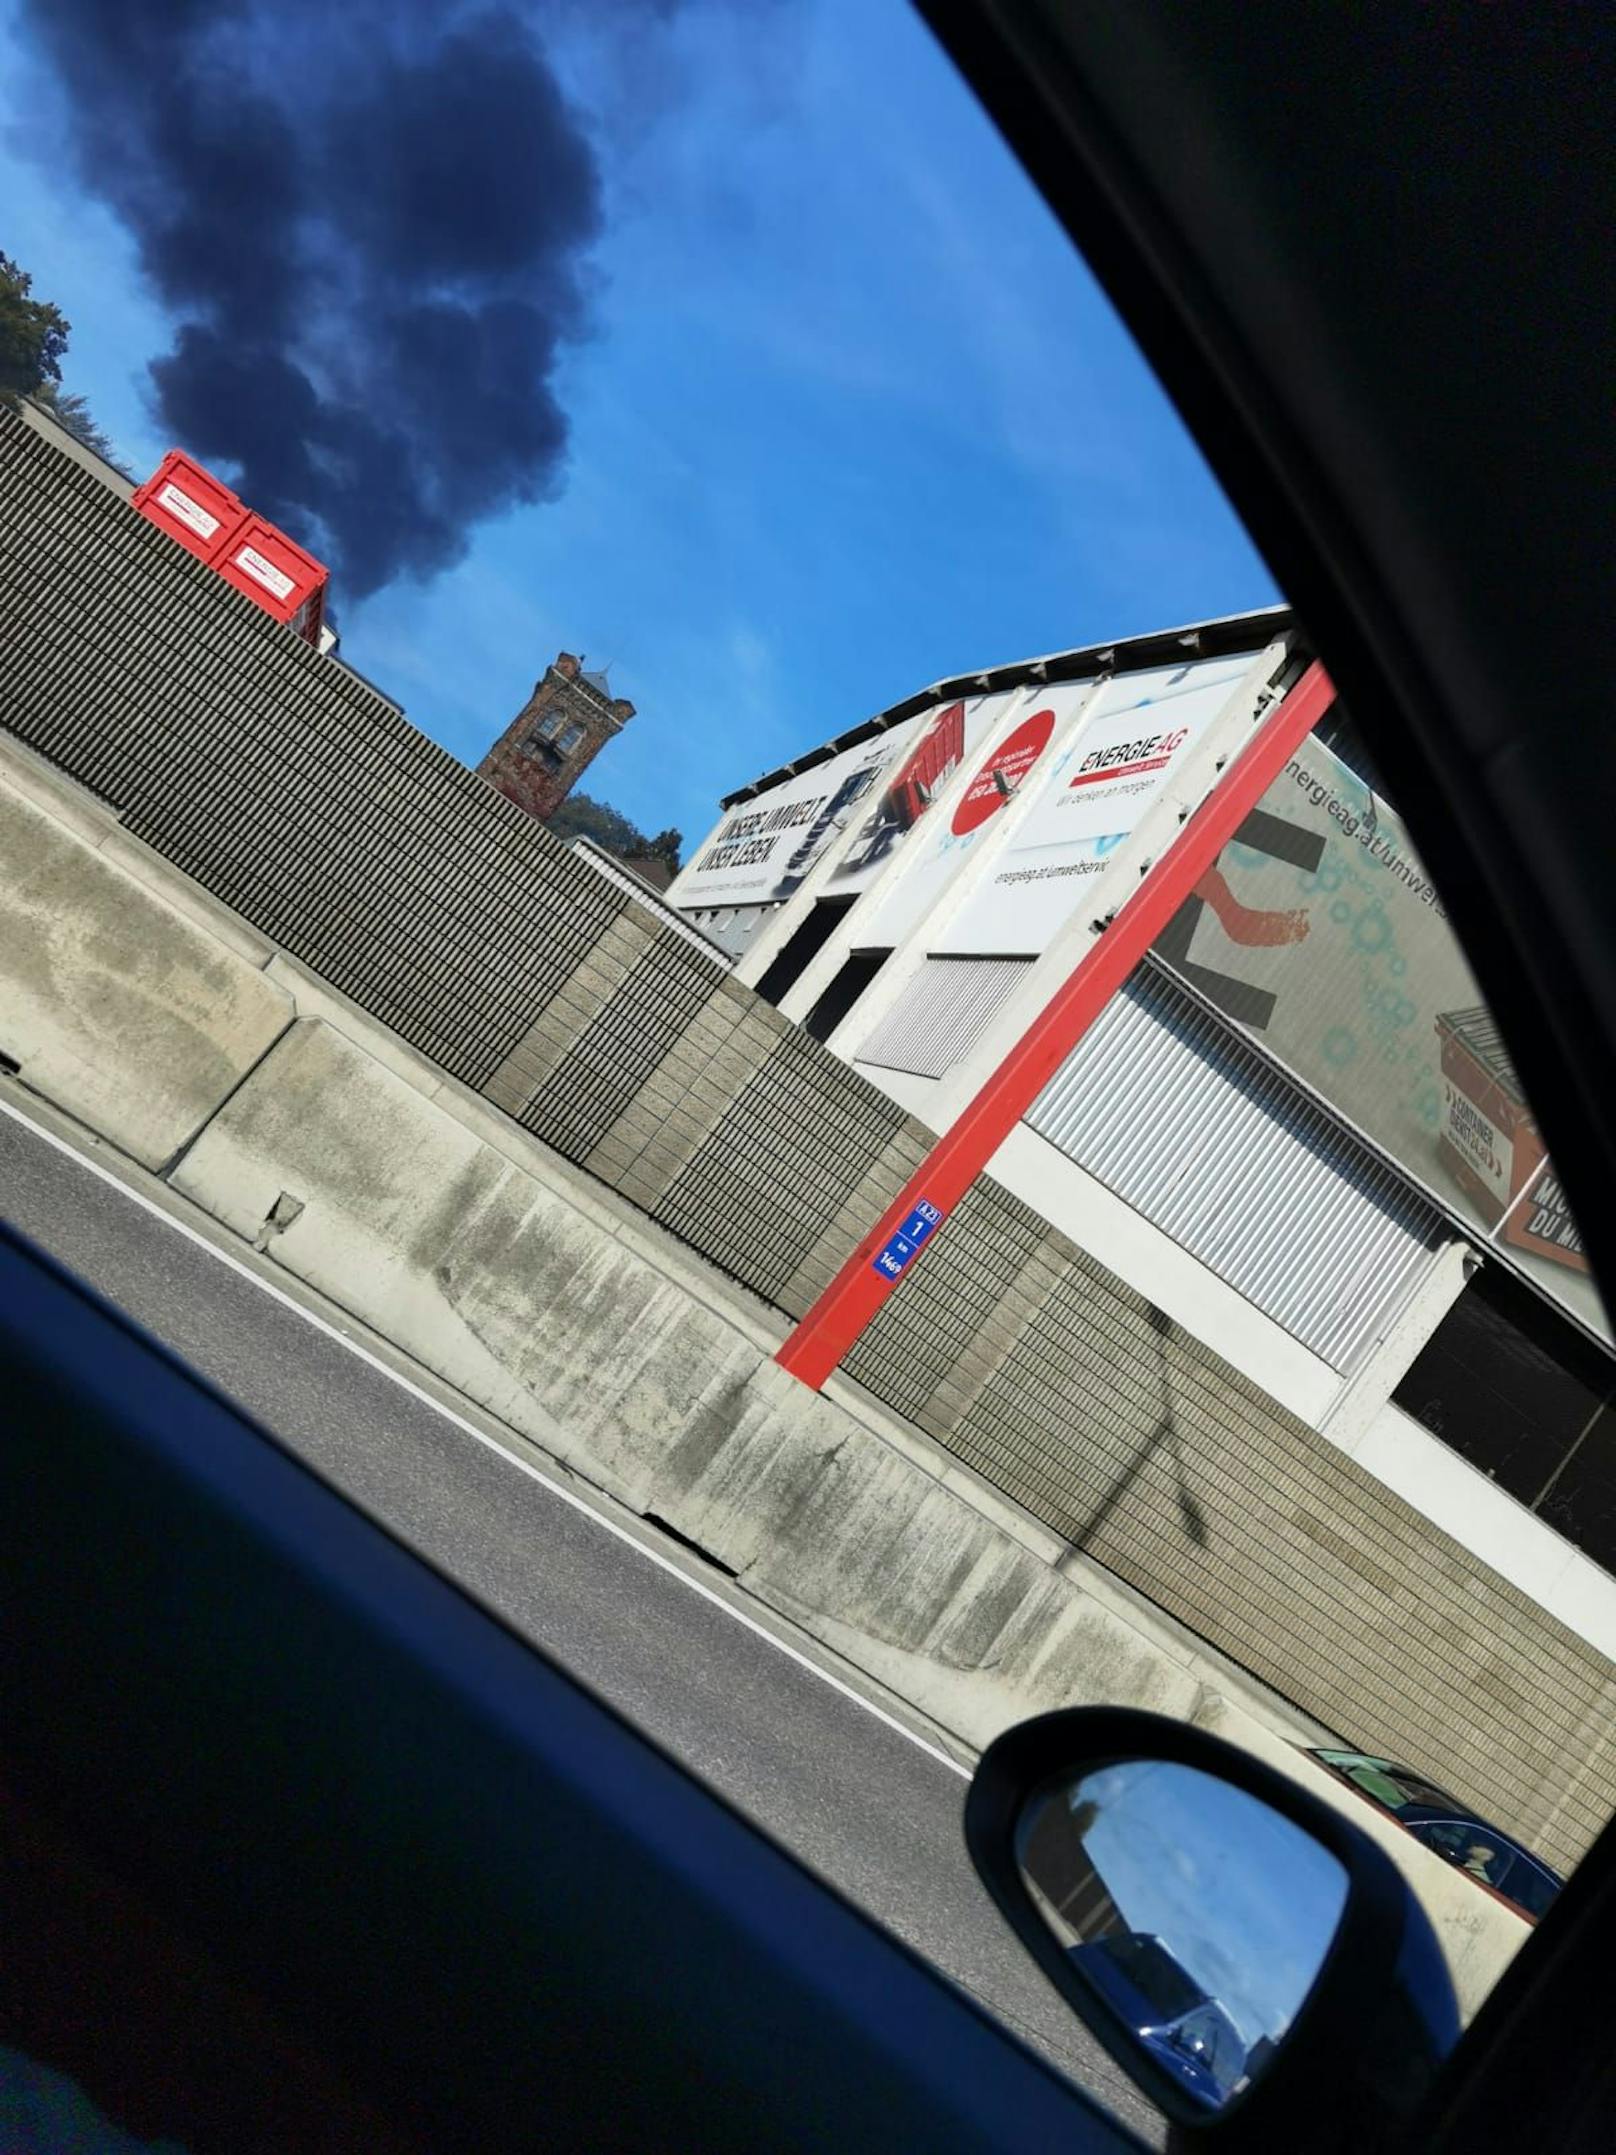 Sonntagvormittag kam es zu einem Brand auf einer Tankstelle in Wien-Donaustadt. Die Rauchsäule war kilometerweit zu sehen.